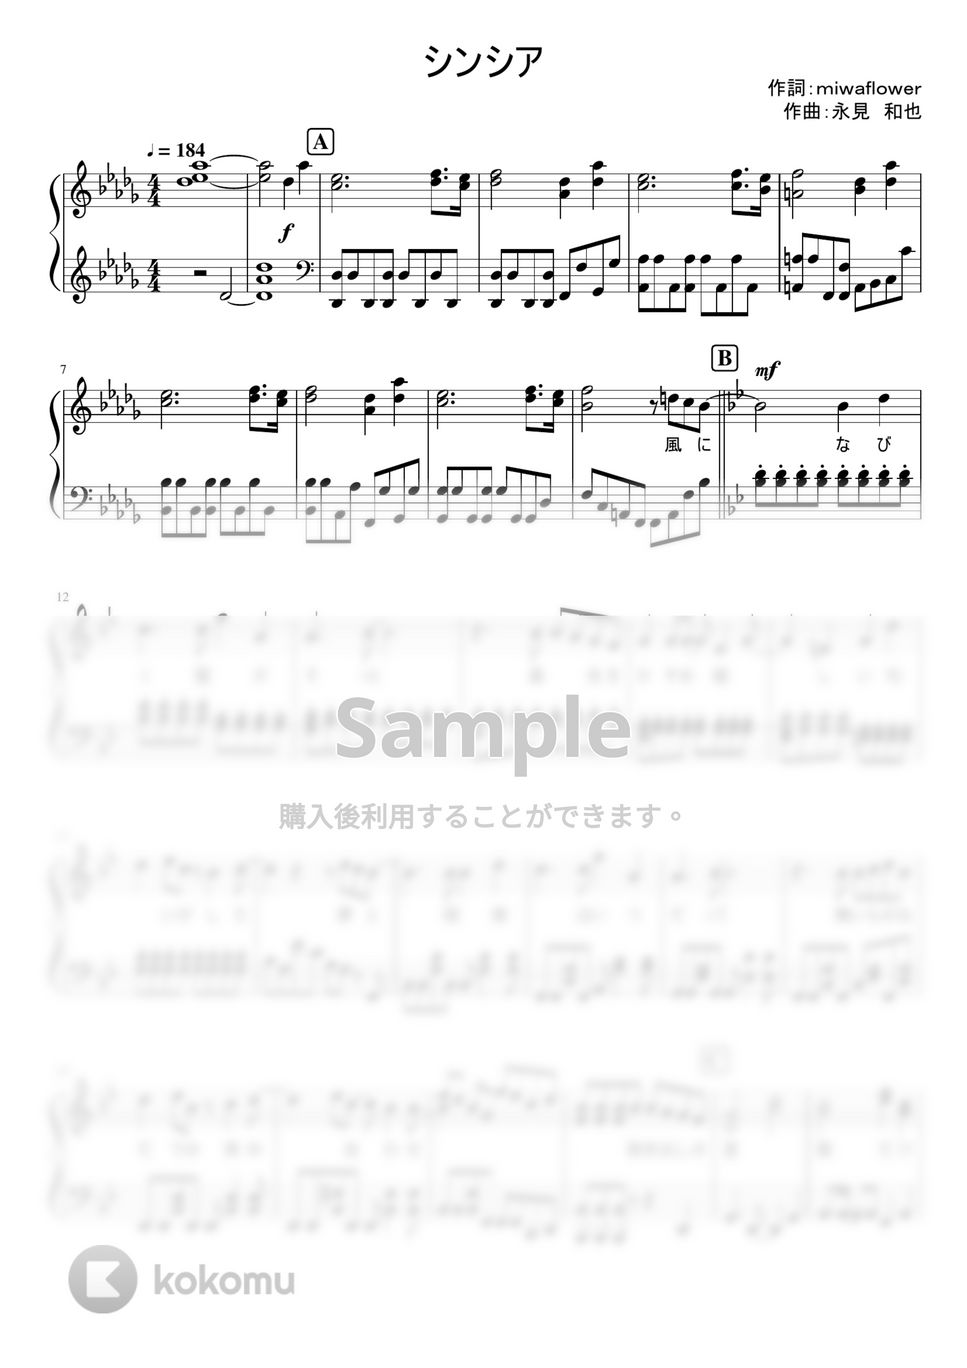 なにわ男子 - シンシア (1stアルバム「1st Love」収録曲。) by ピアノぷりん